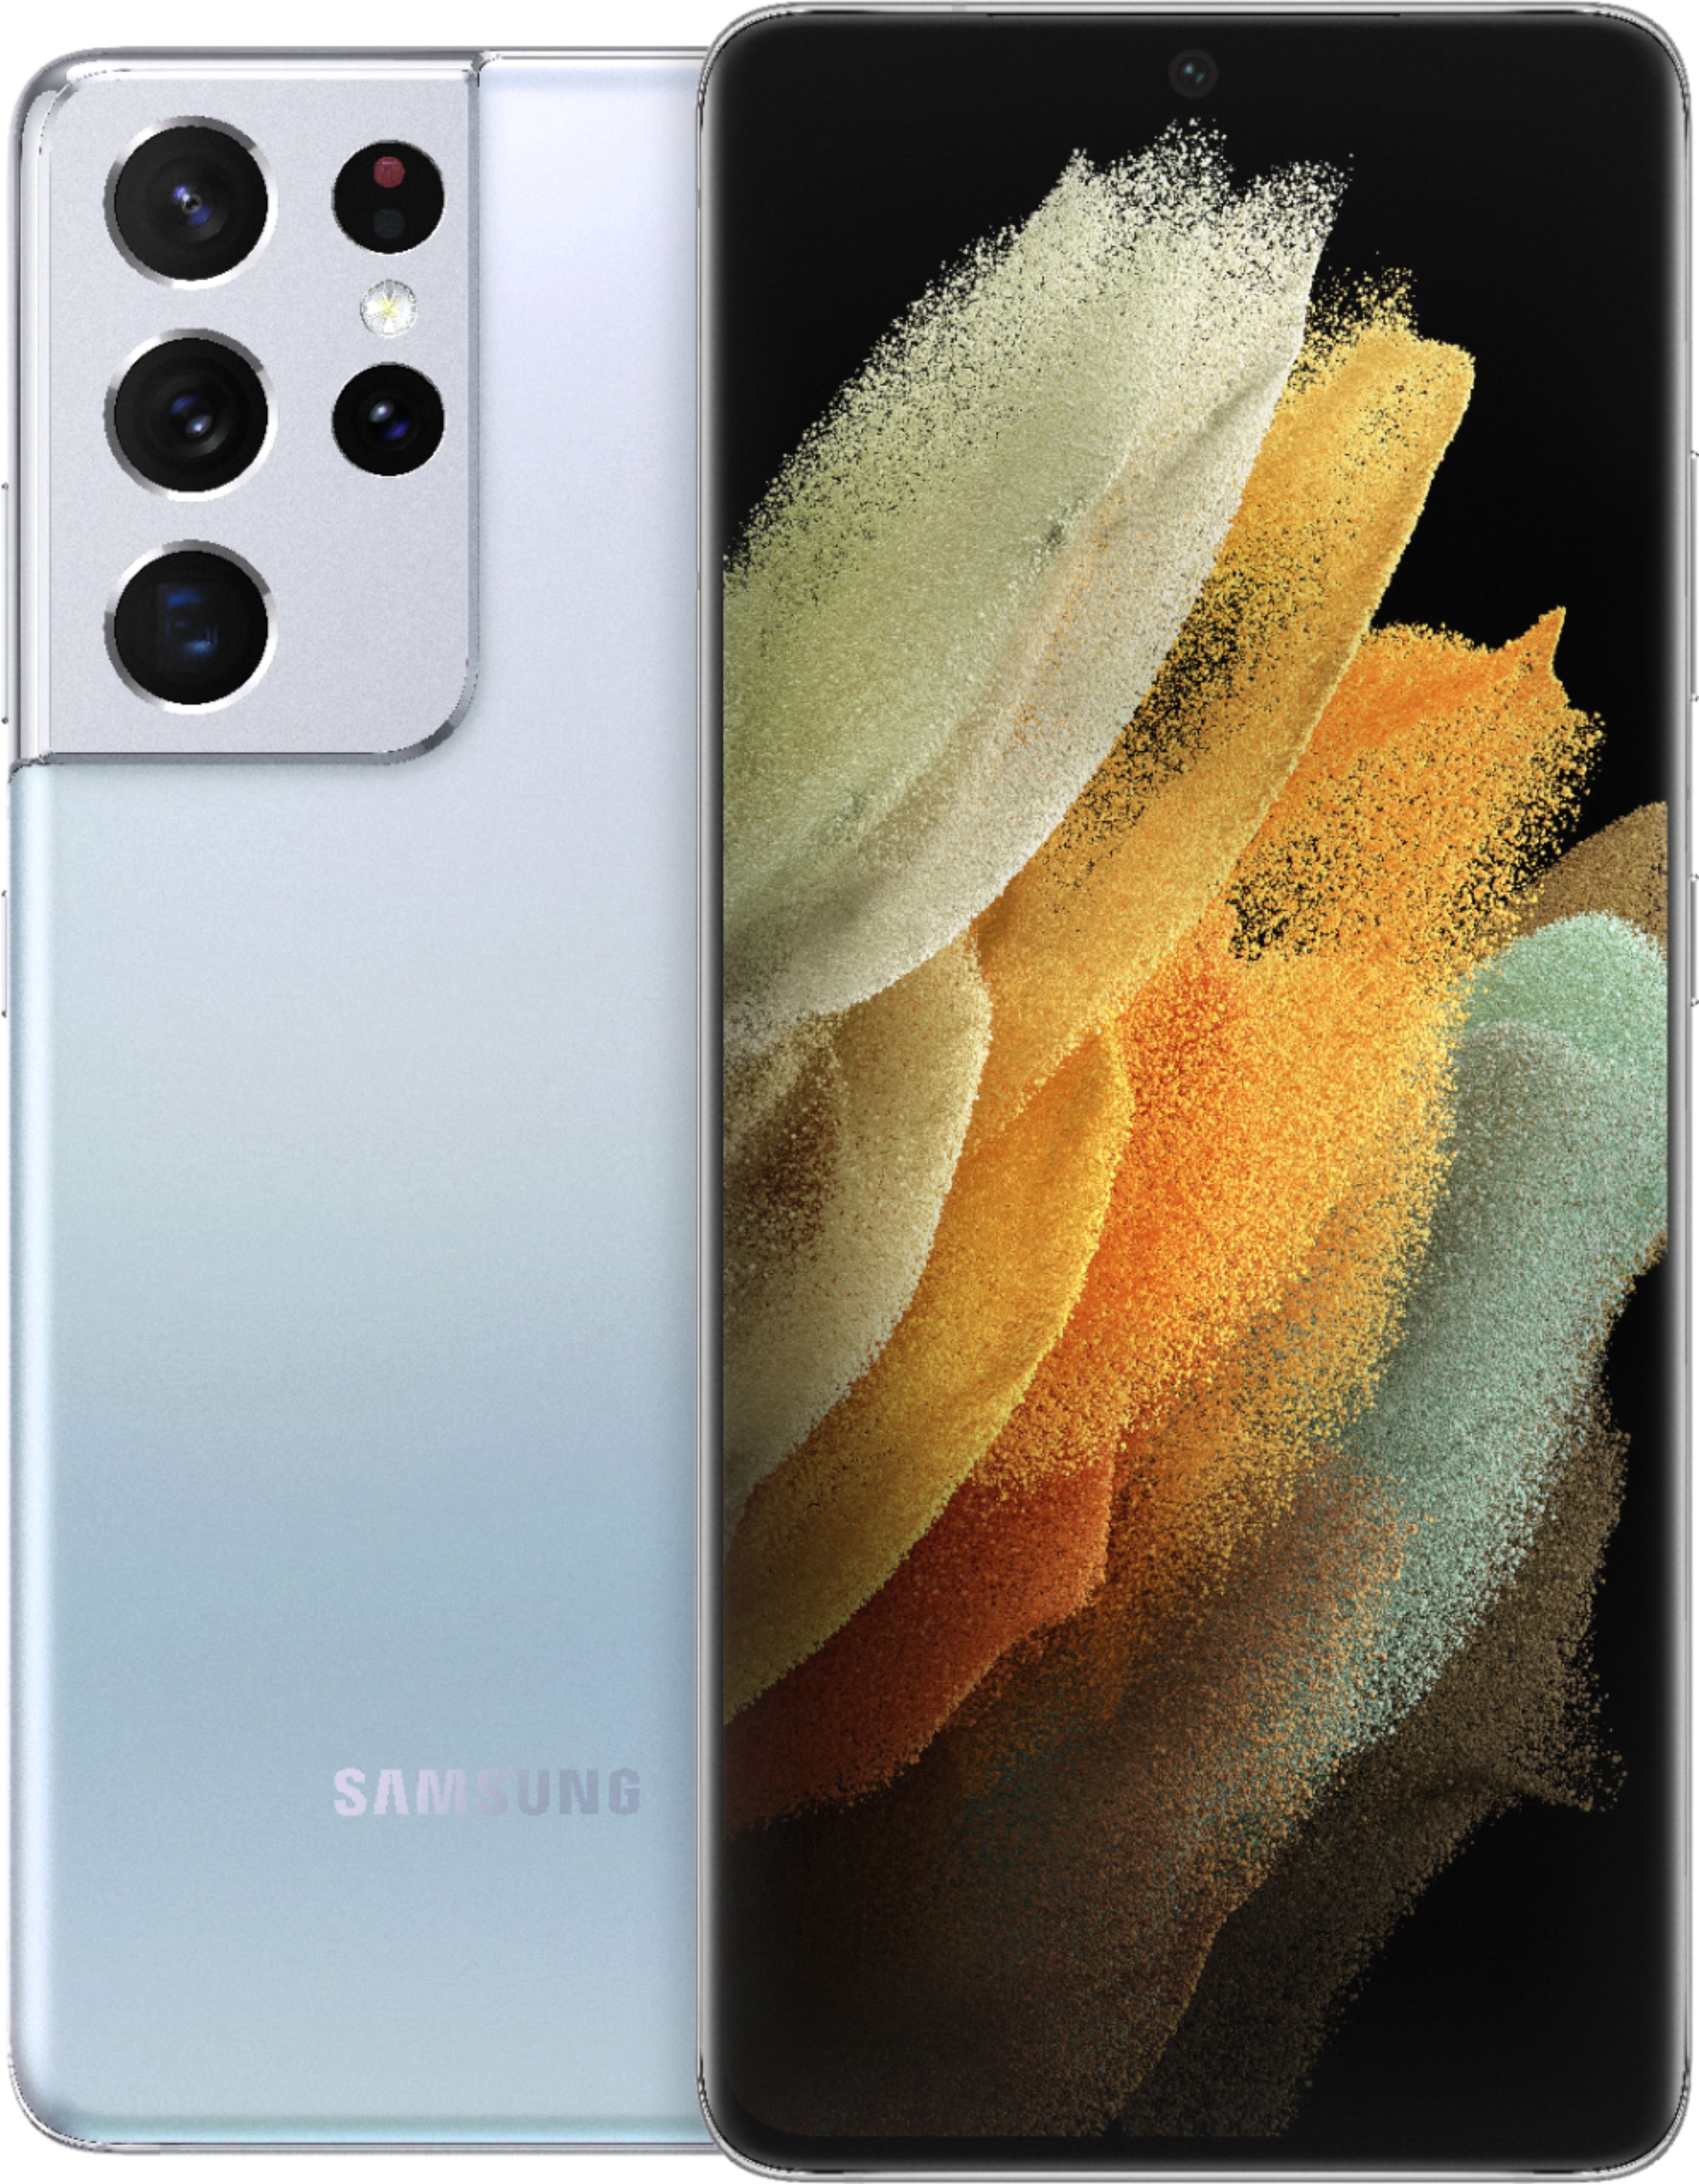 Samsung - Galaxy S21 Ultra 5G 128GB - Phantom Silver (Verizon)